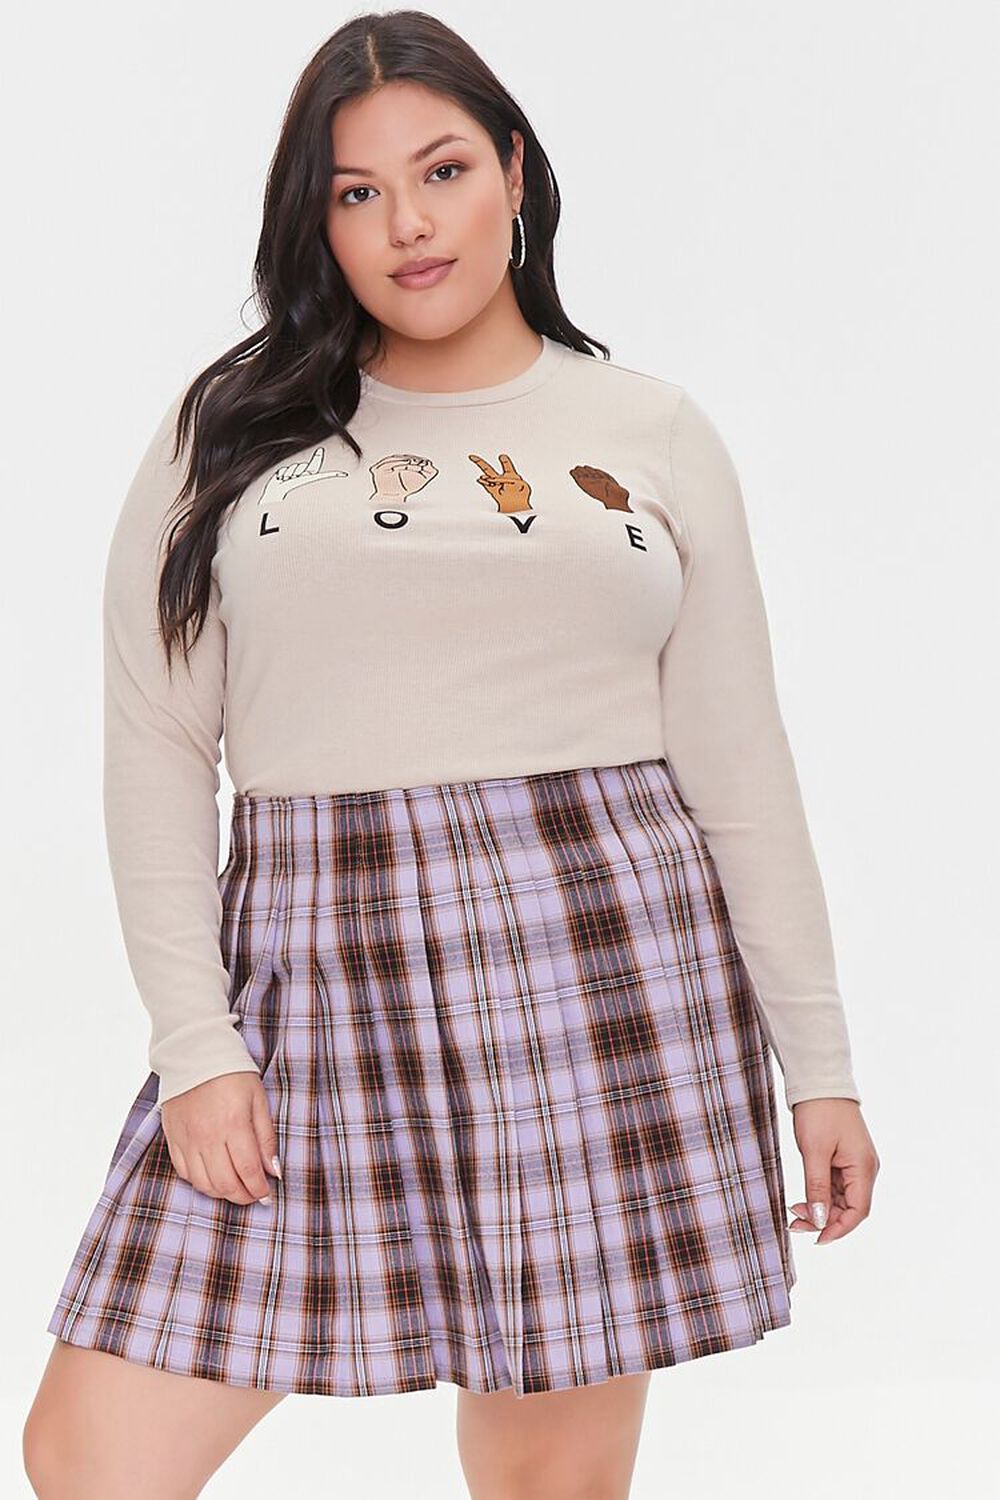 LAVENDER/MULTI Plus Size Plaid Mini Skirt, image 1